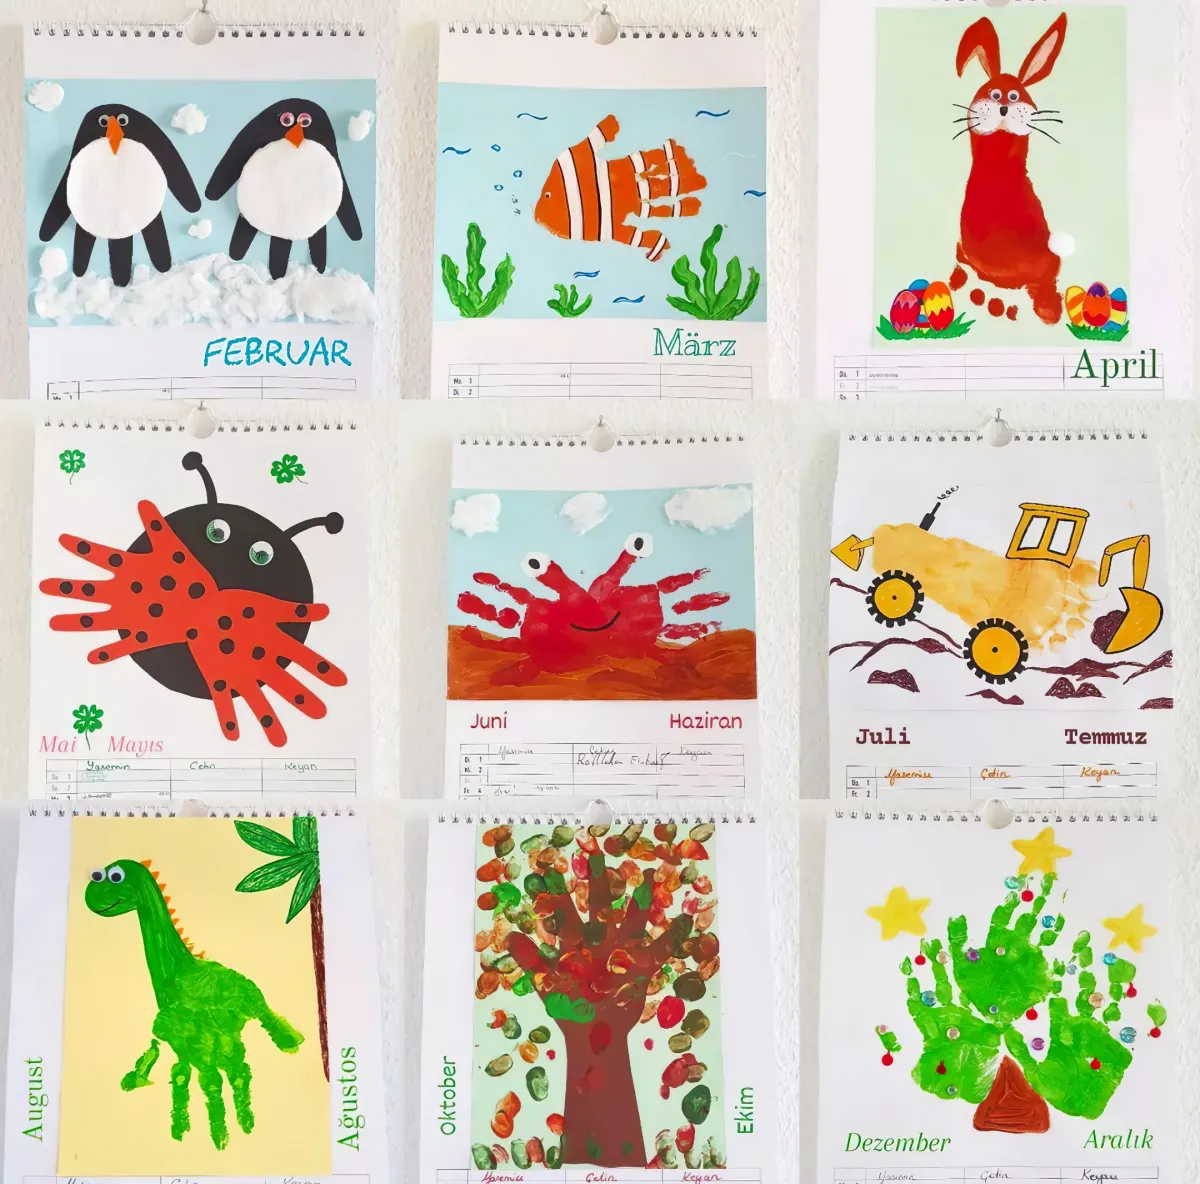 bilder gestalten mit handabdrücken diy kalender mit kindern